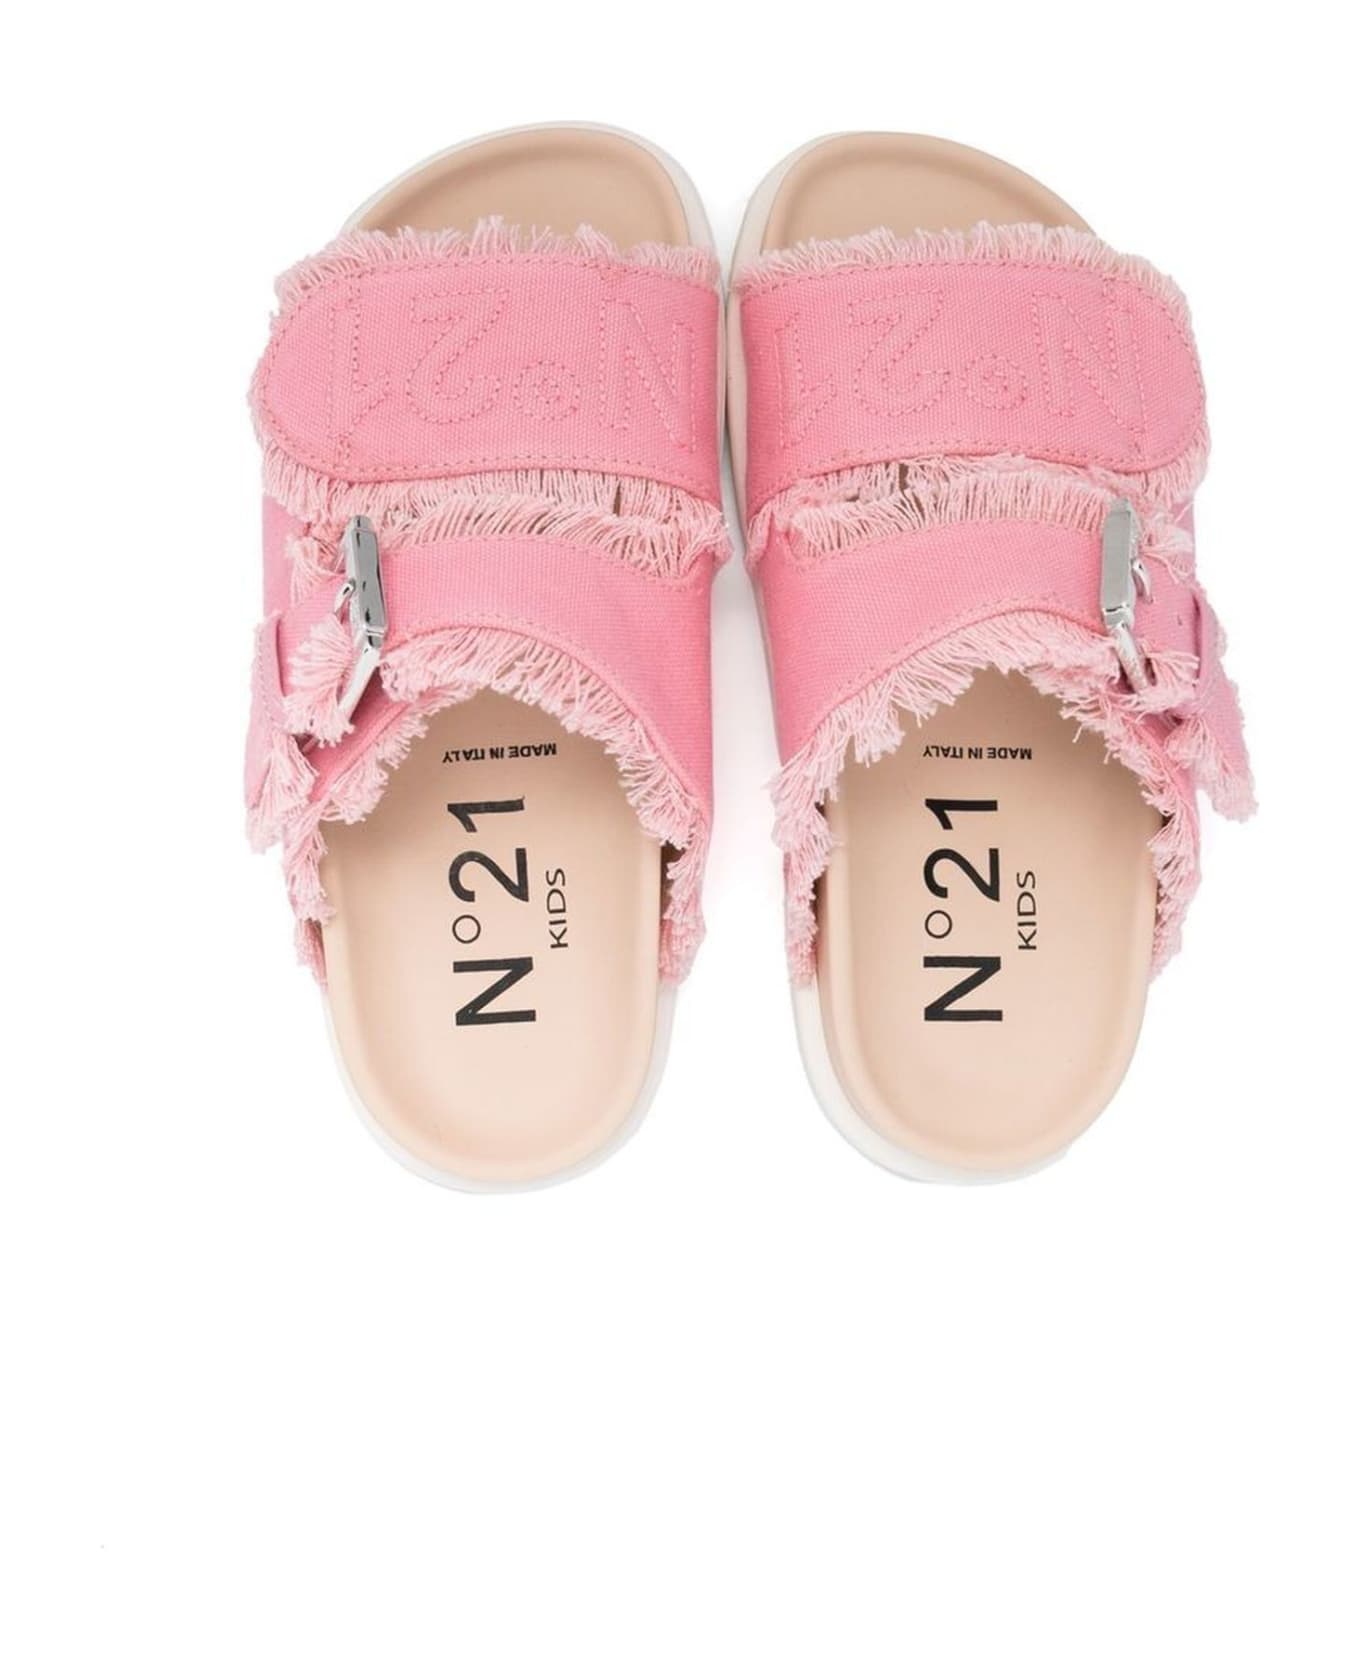 N.21 N°21 Sandals Pink - Pink シューズ